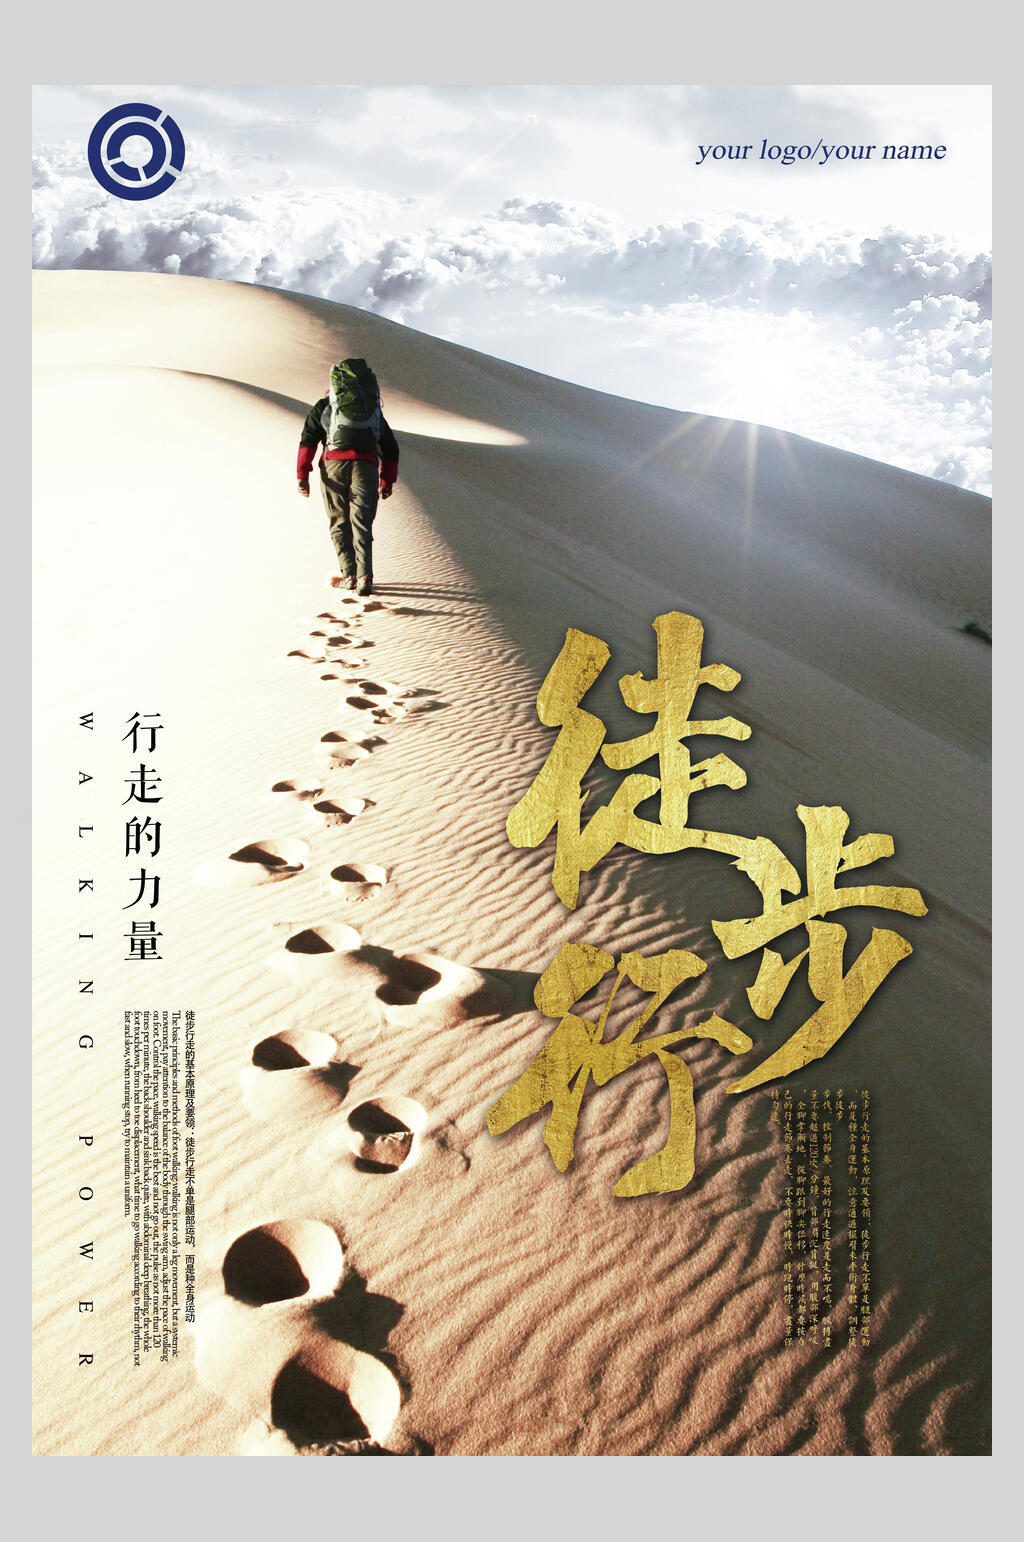 高端沙漠徒步旅游宣传海报